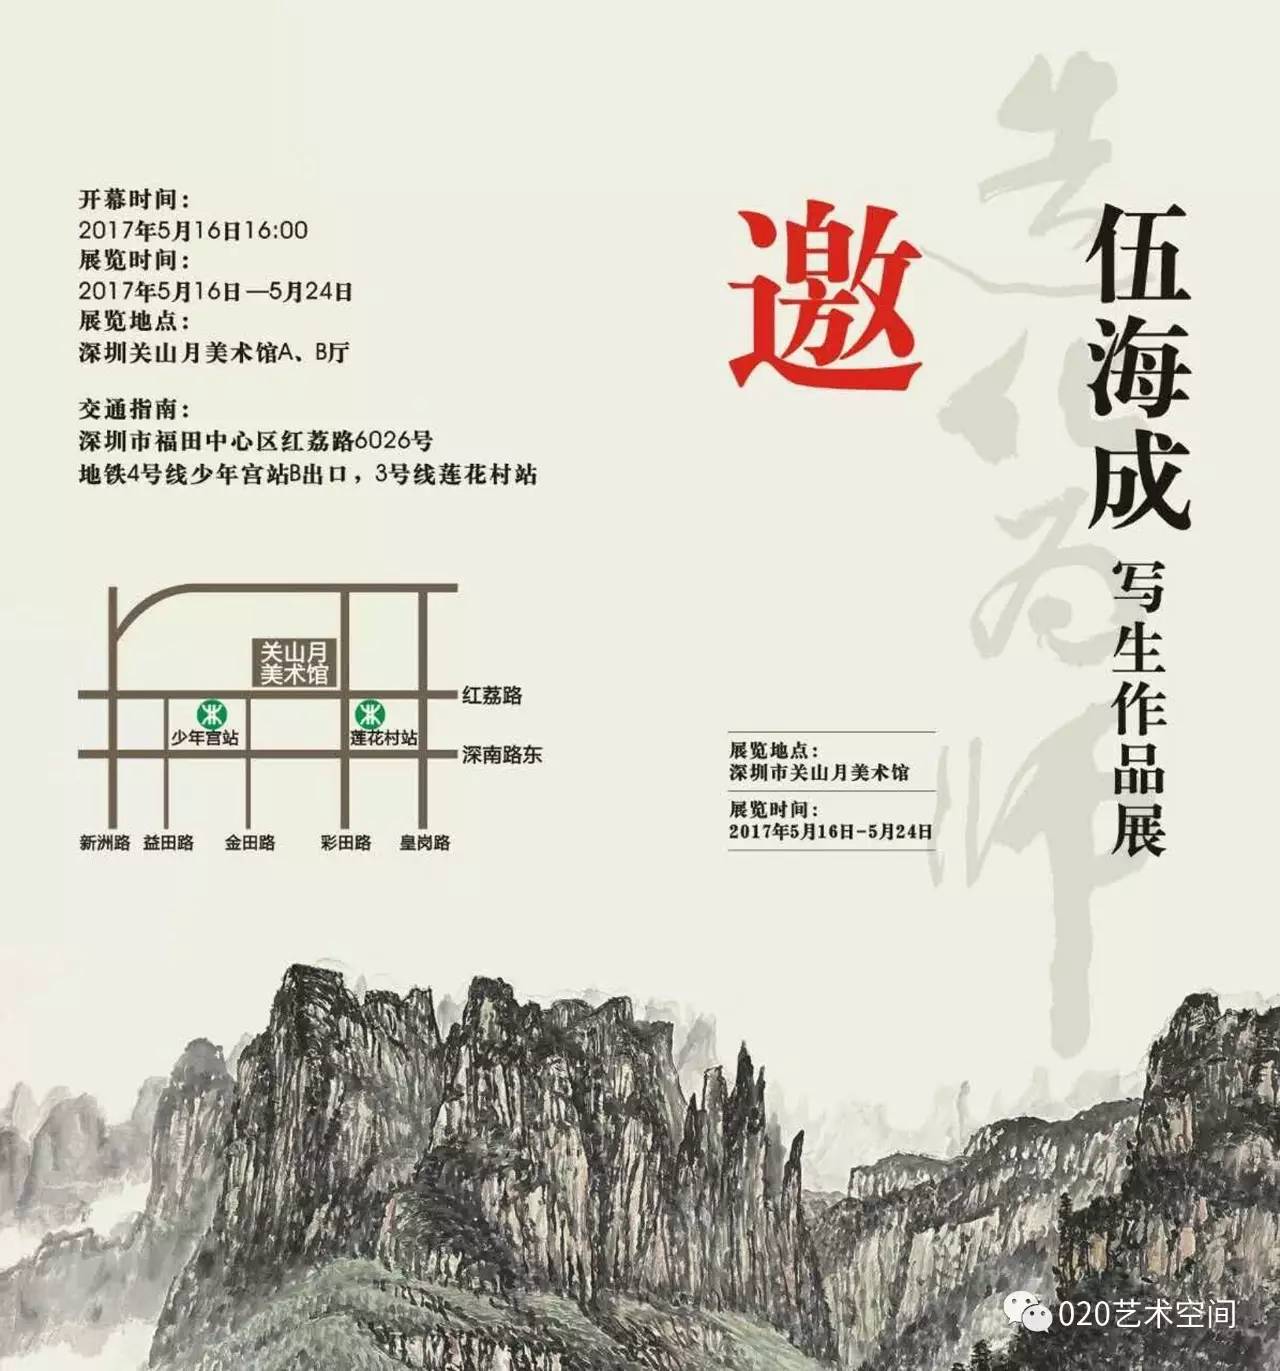 造化为师 伍海成写生作品展5月16日16时在关山月美术馆开幕